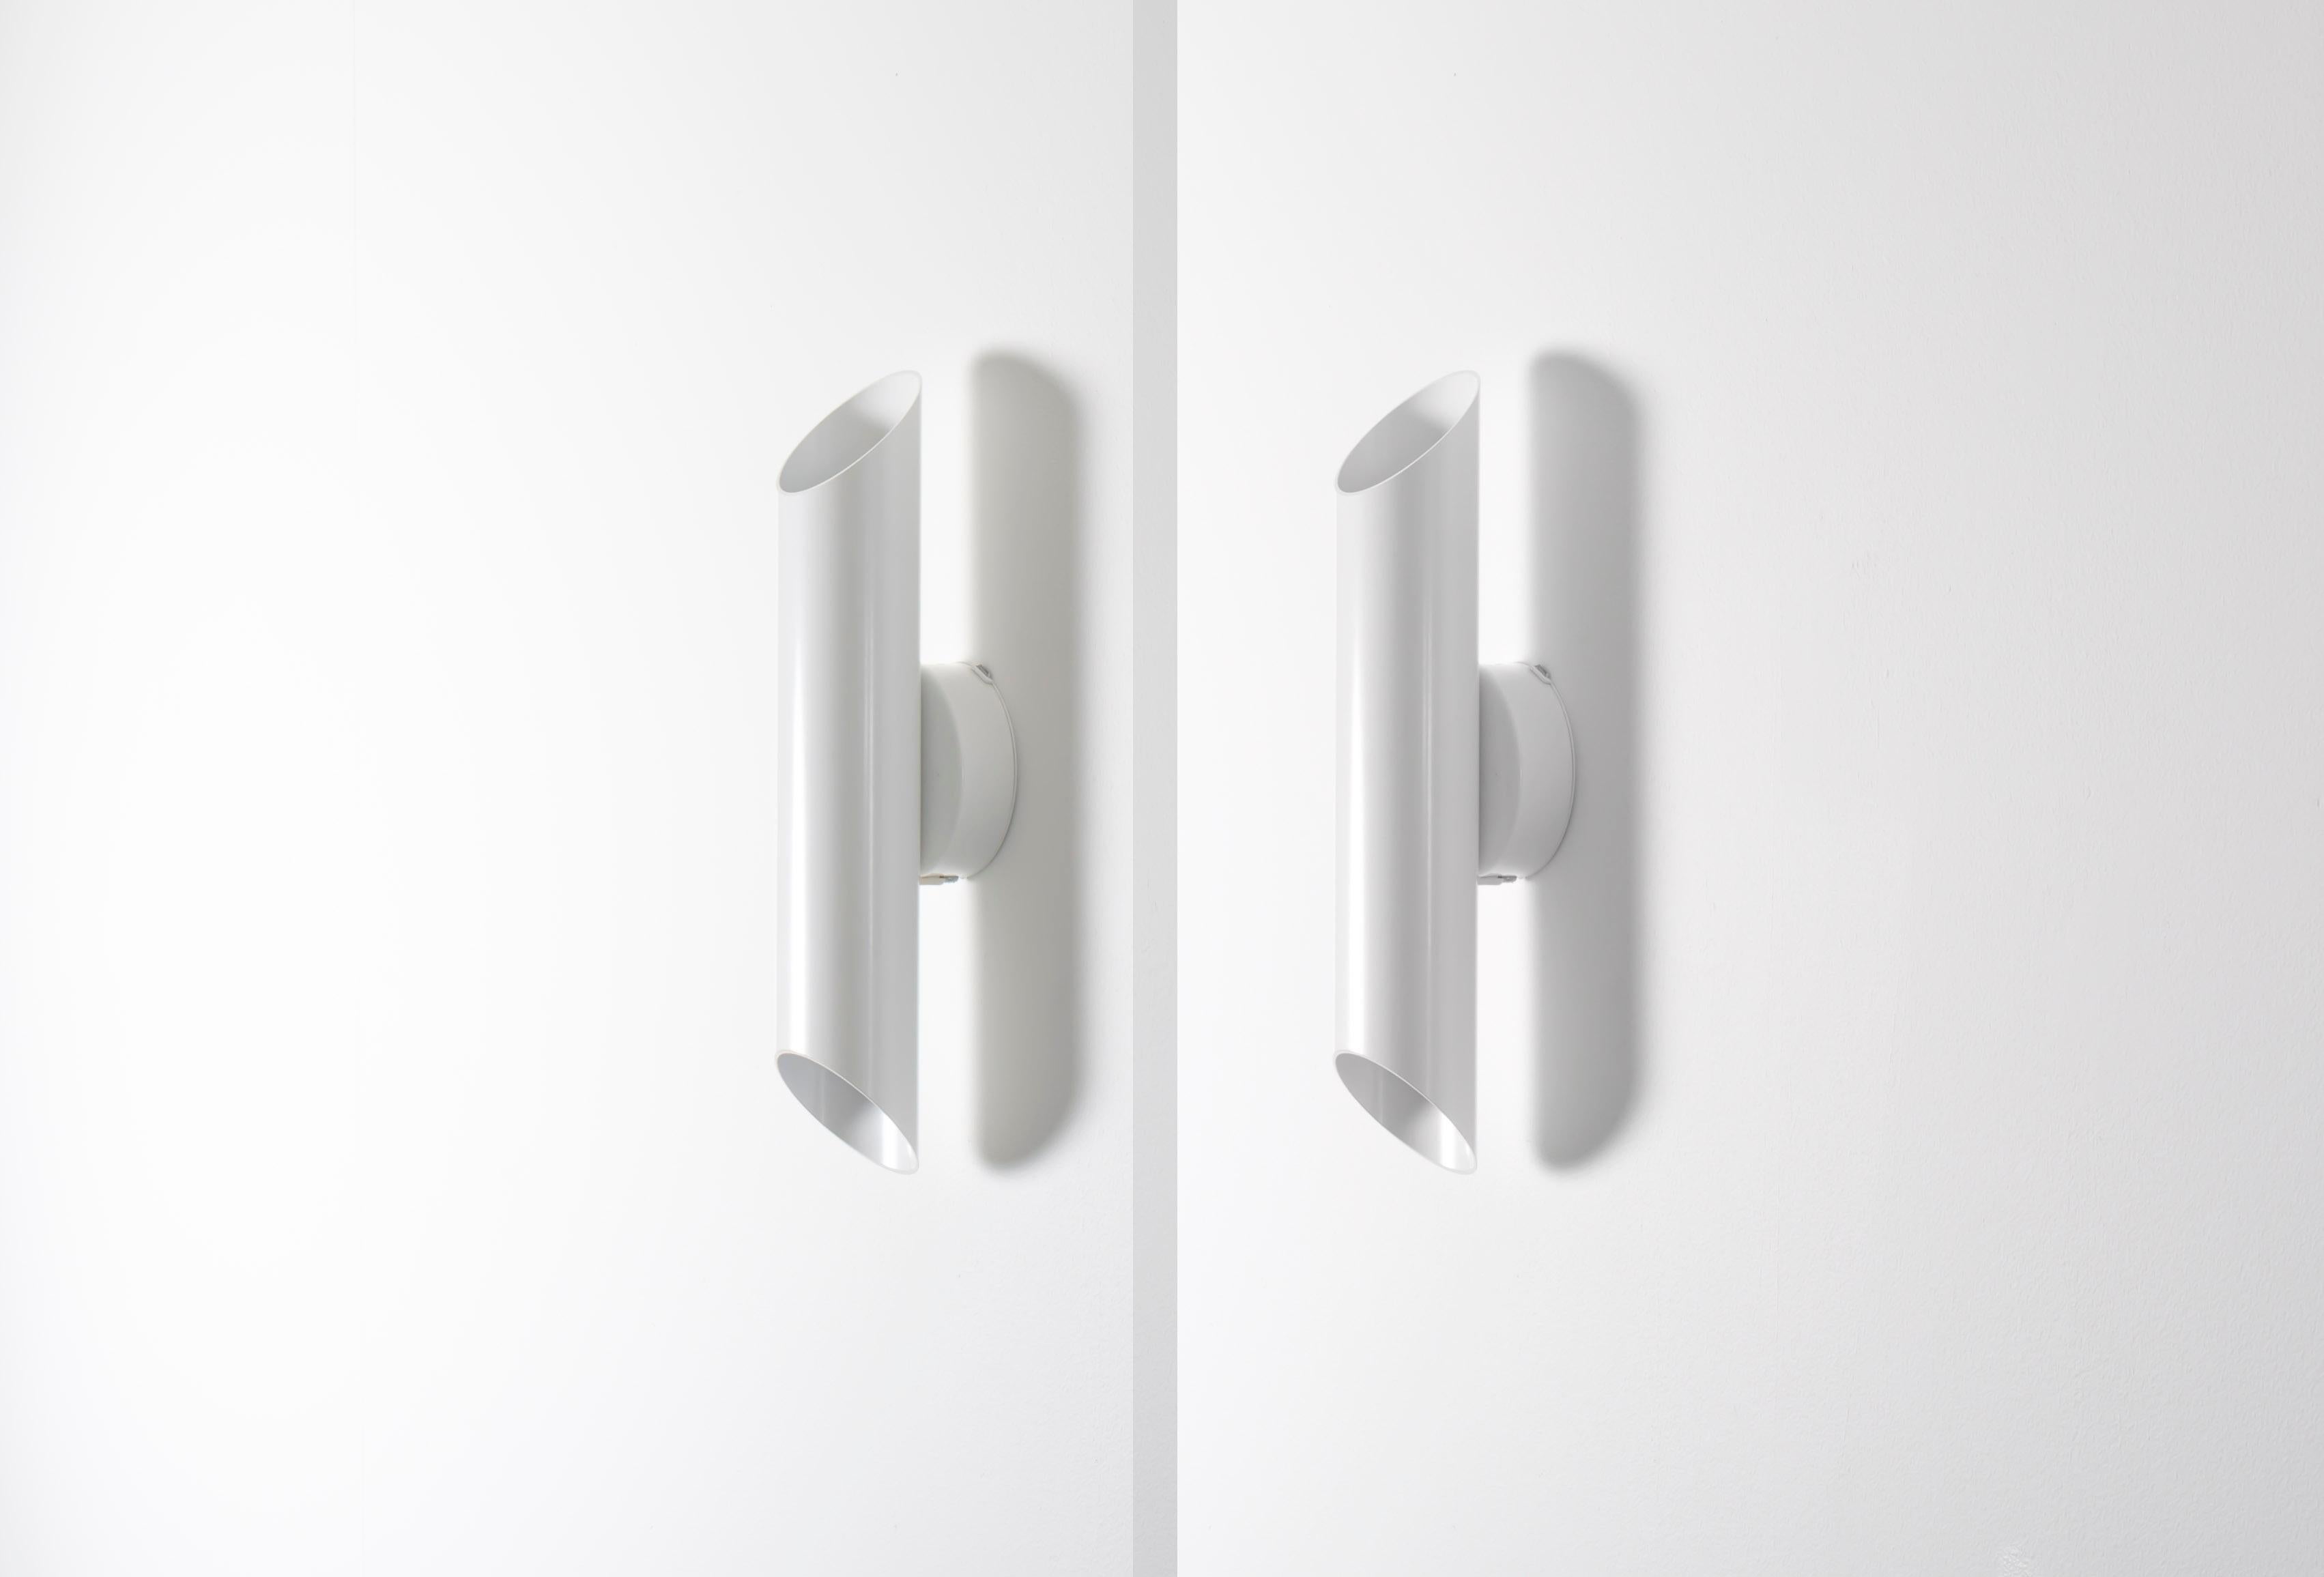 Wunderschönes Paar Wandleuchten auf einem minimalistischen, lackierten Metallrahmen. Modell 